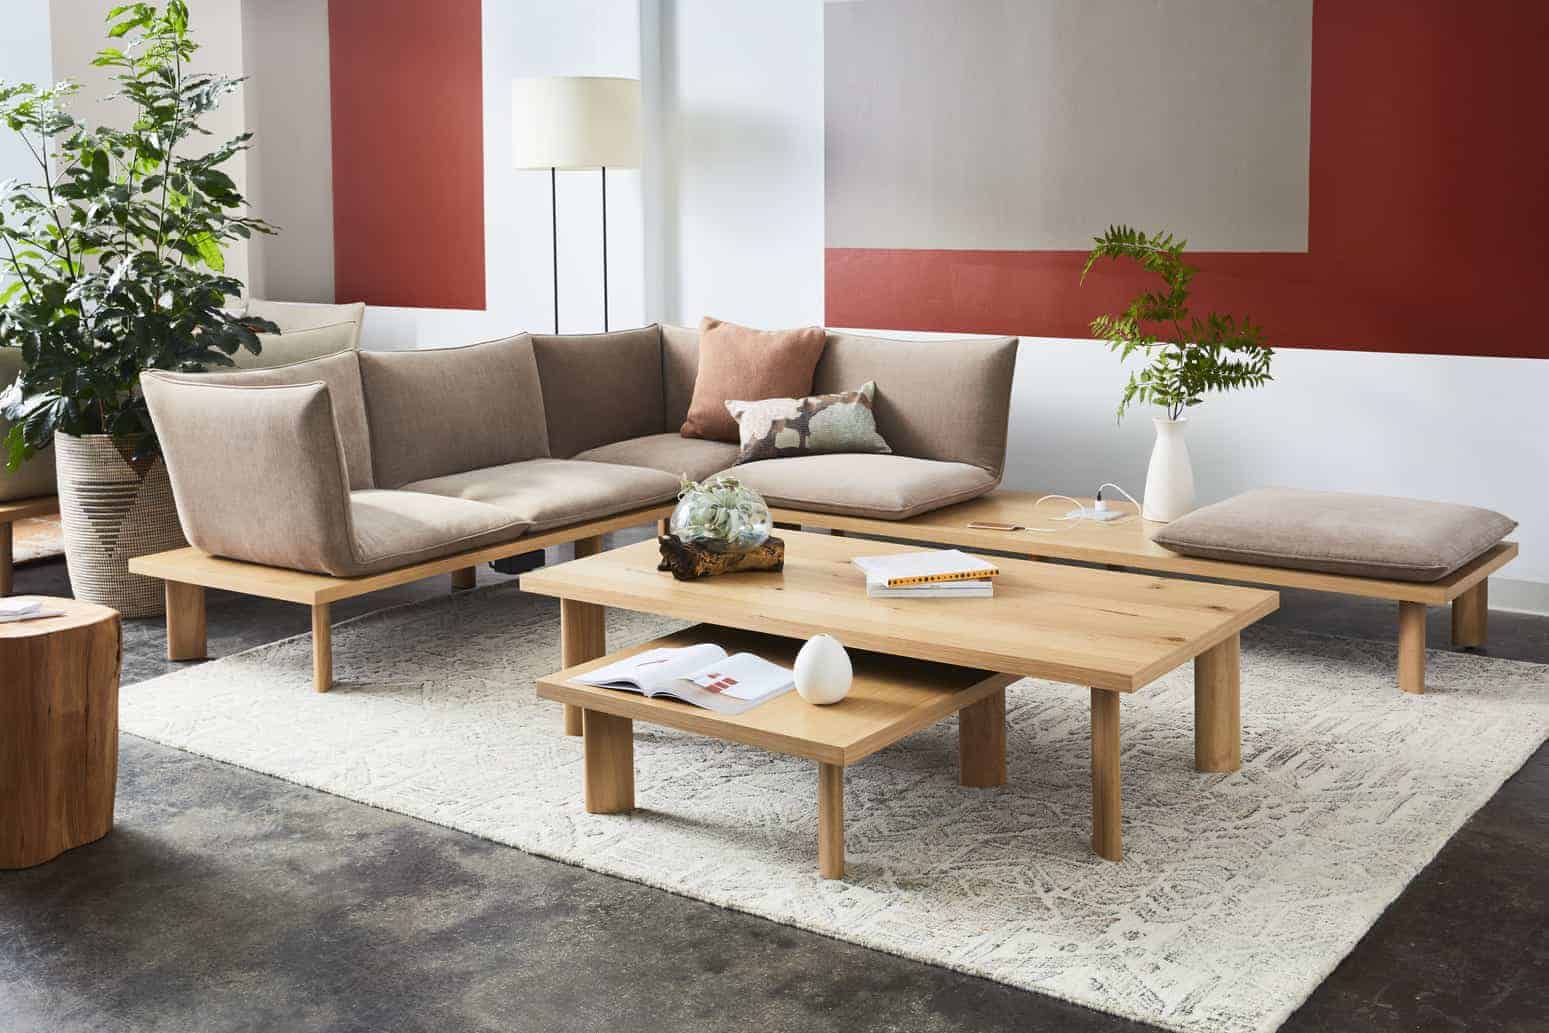 Simple Furniture Design Sofa Set - Tutorial Pics